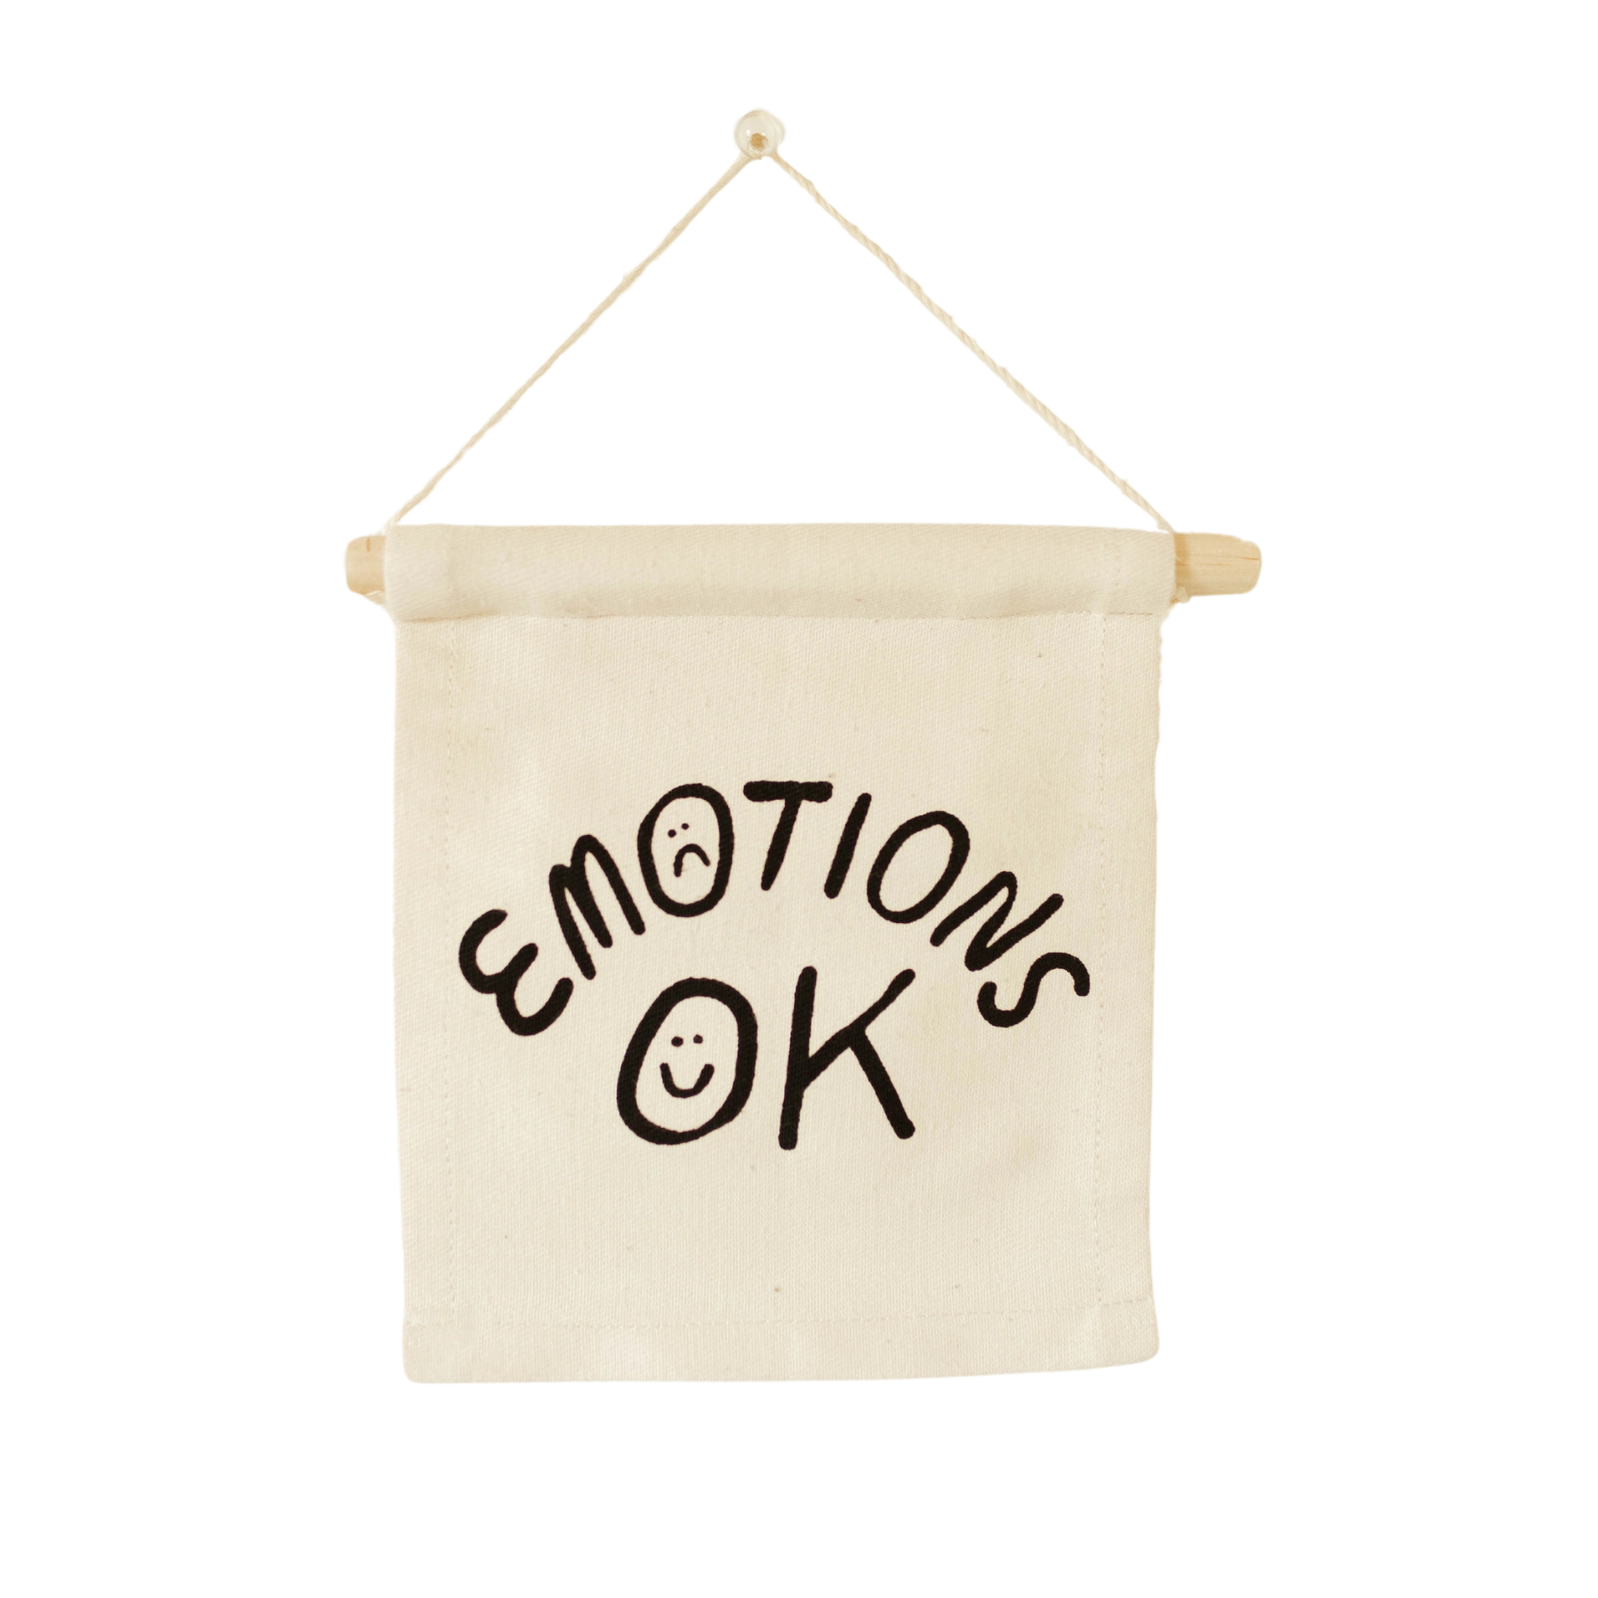 Emotions O.K. Hang Sign